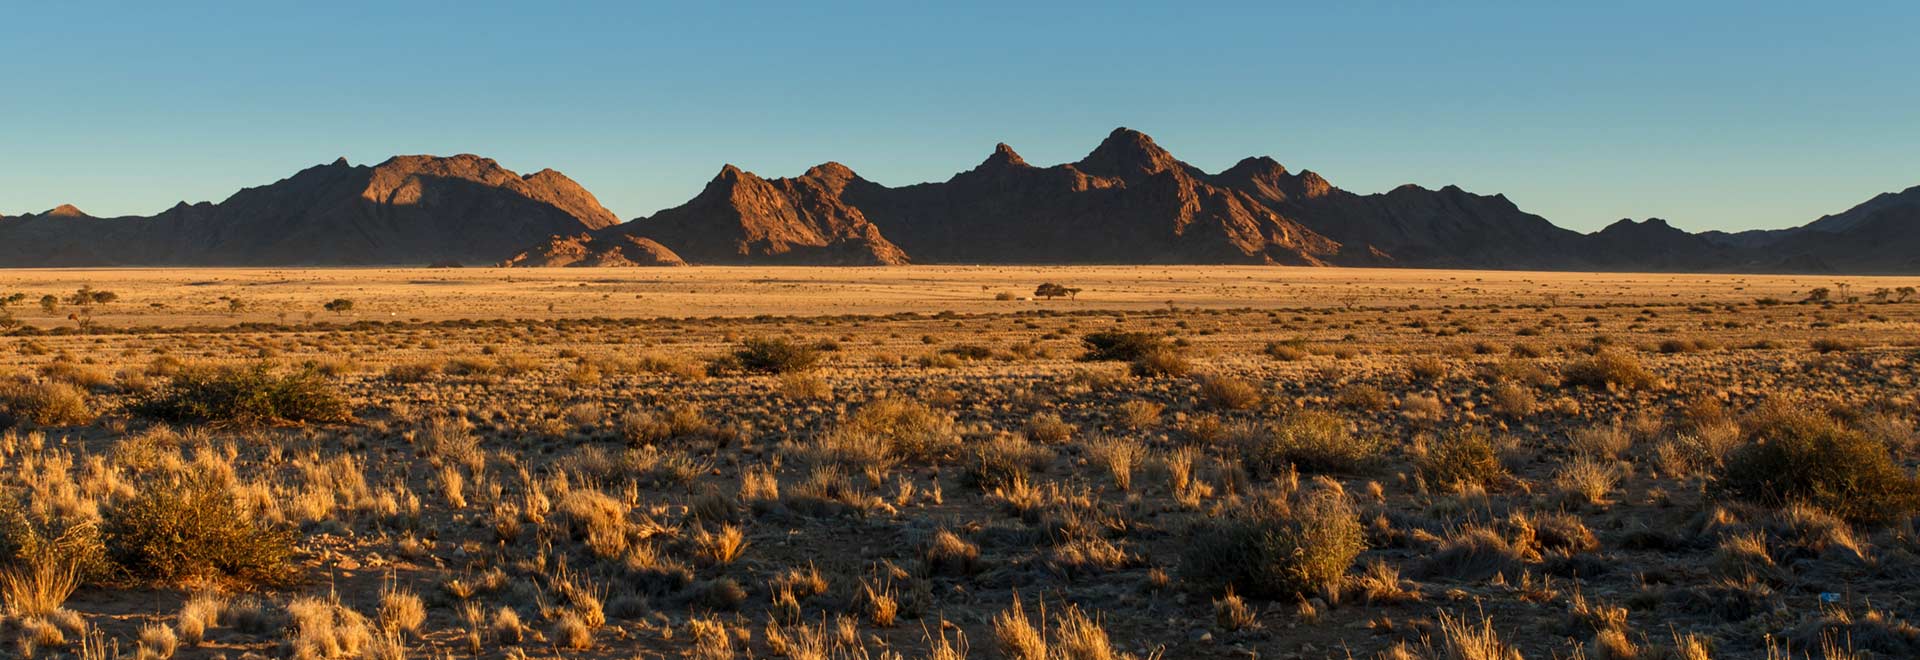 Southern Africa Namibia Namib Desert